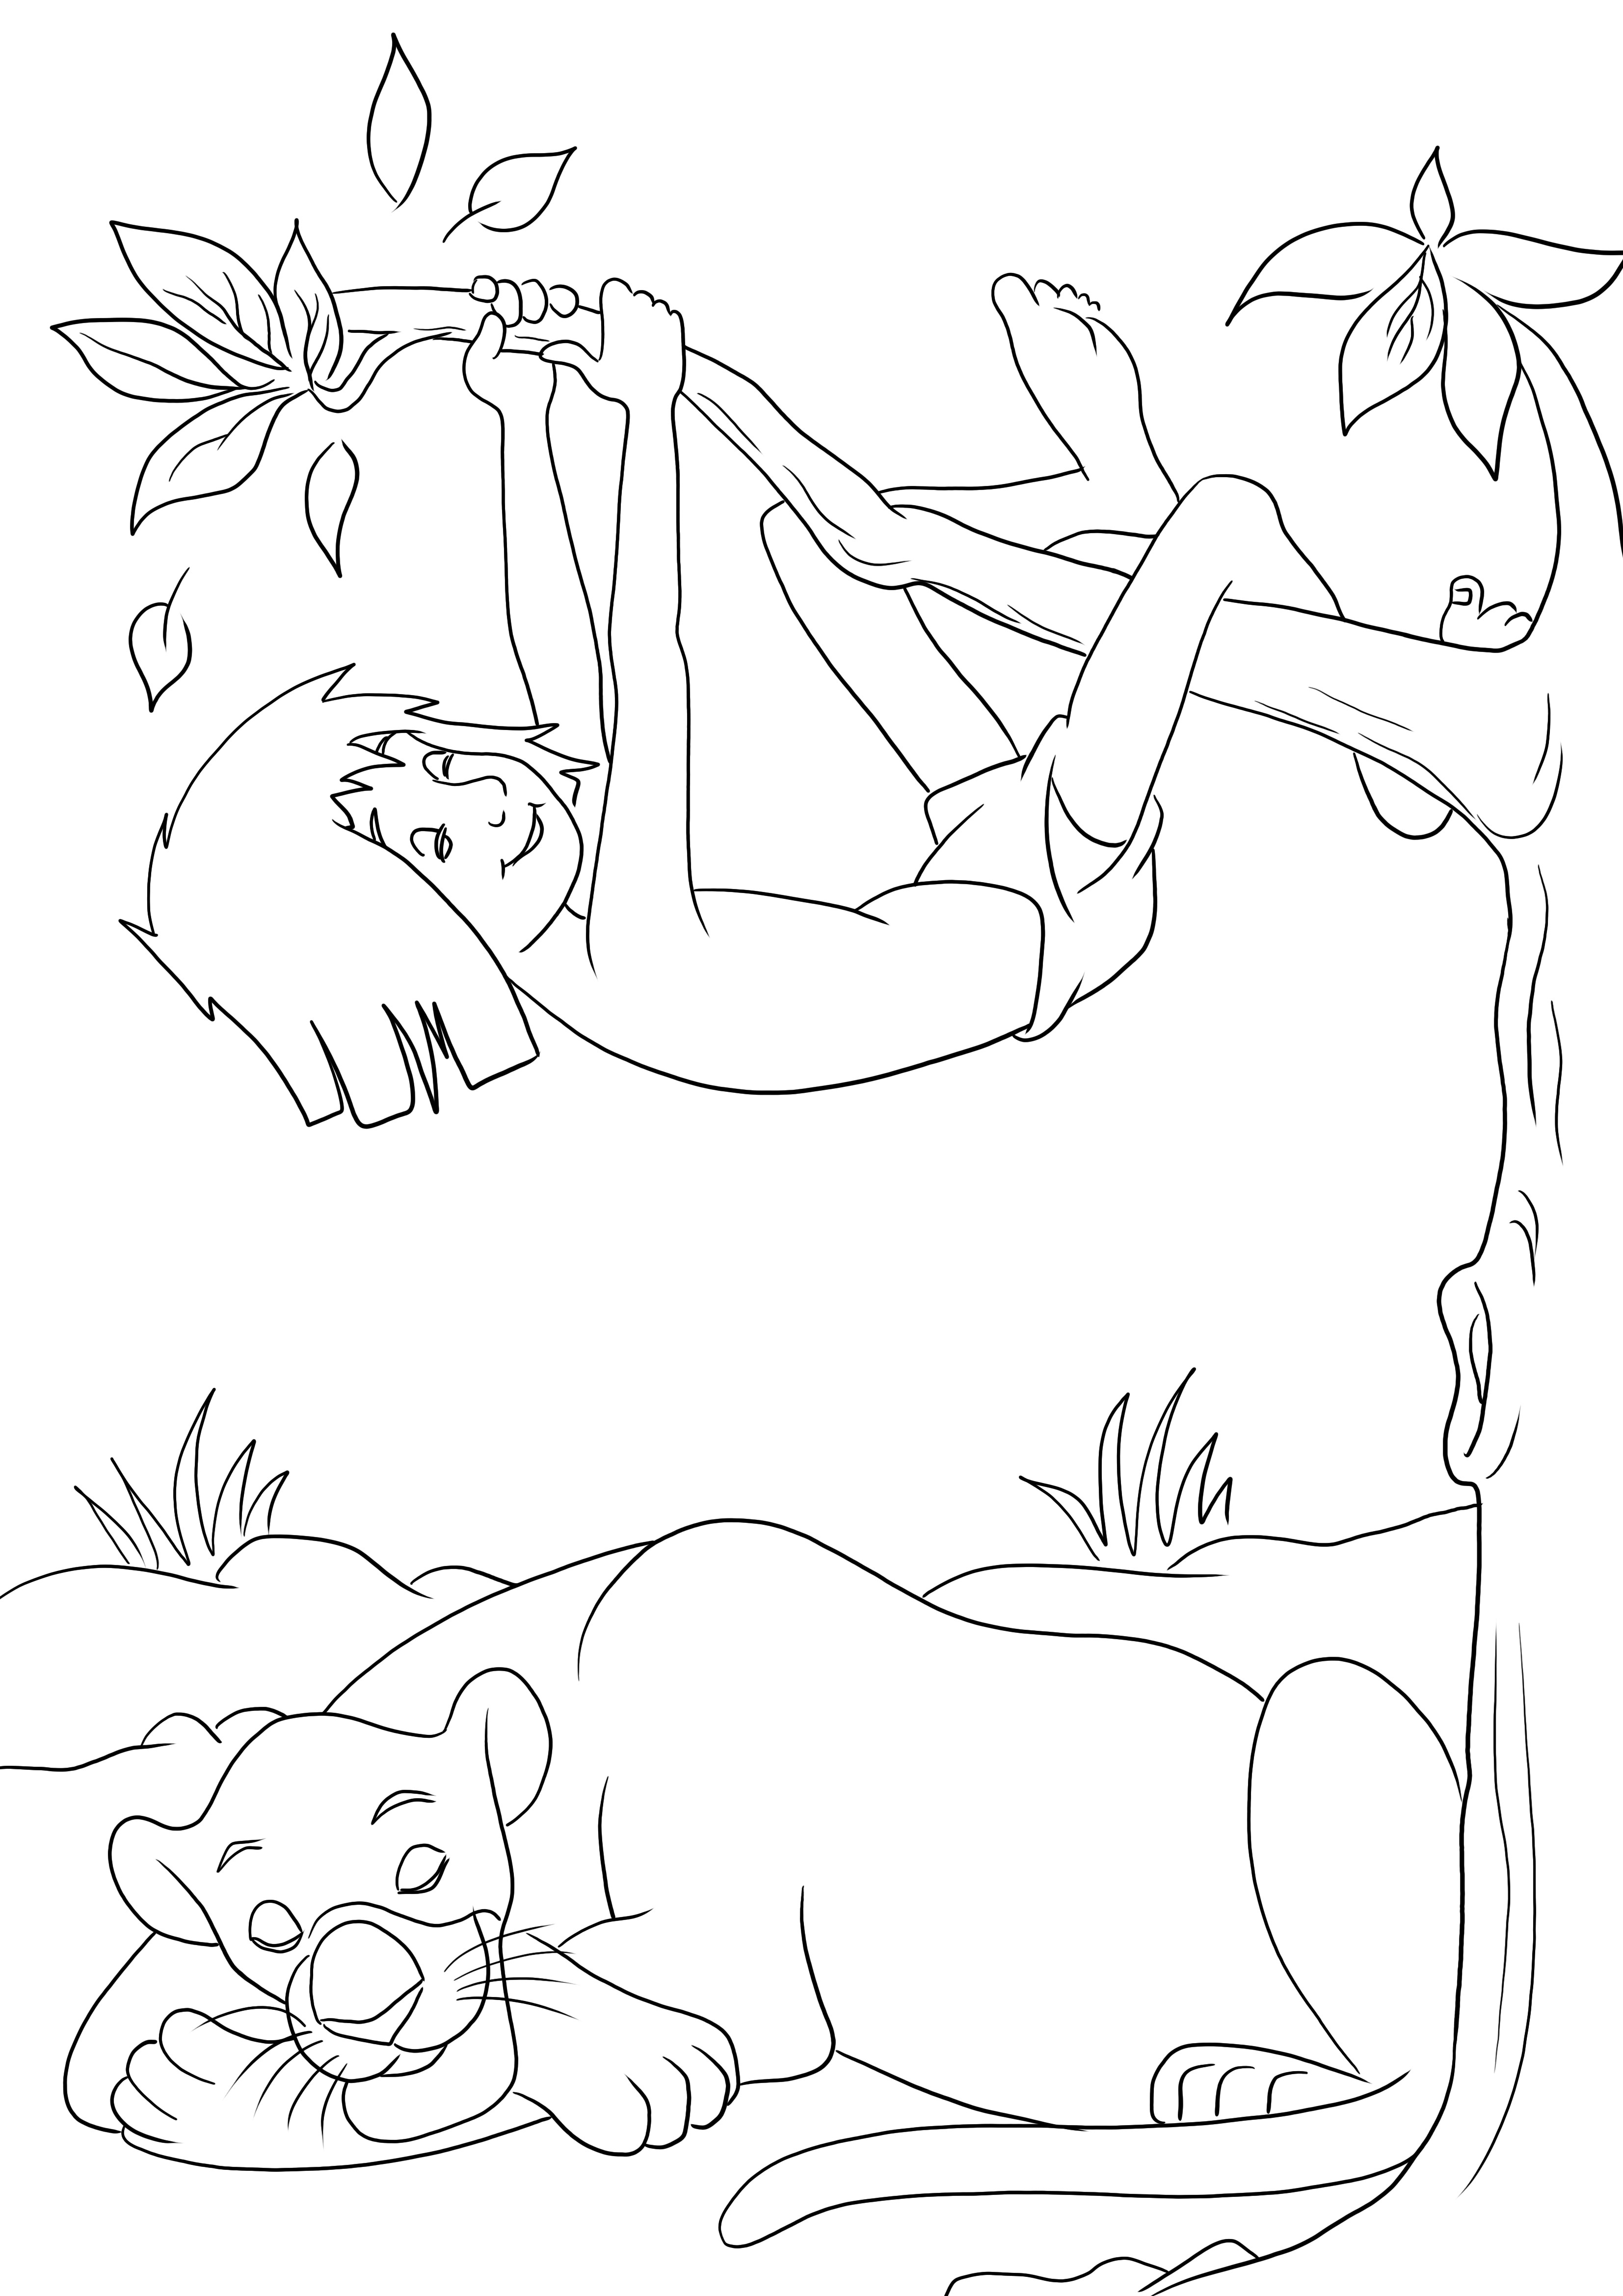 Mowgli dan Bagheera tidur bebas dicetak untuk pewarnaan mudah